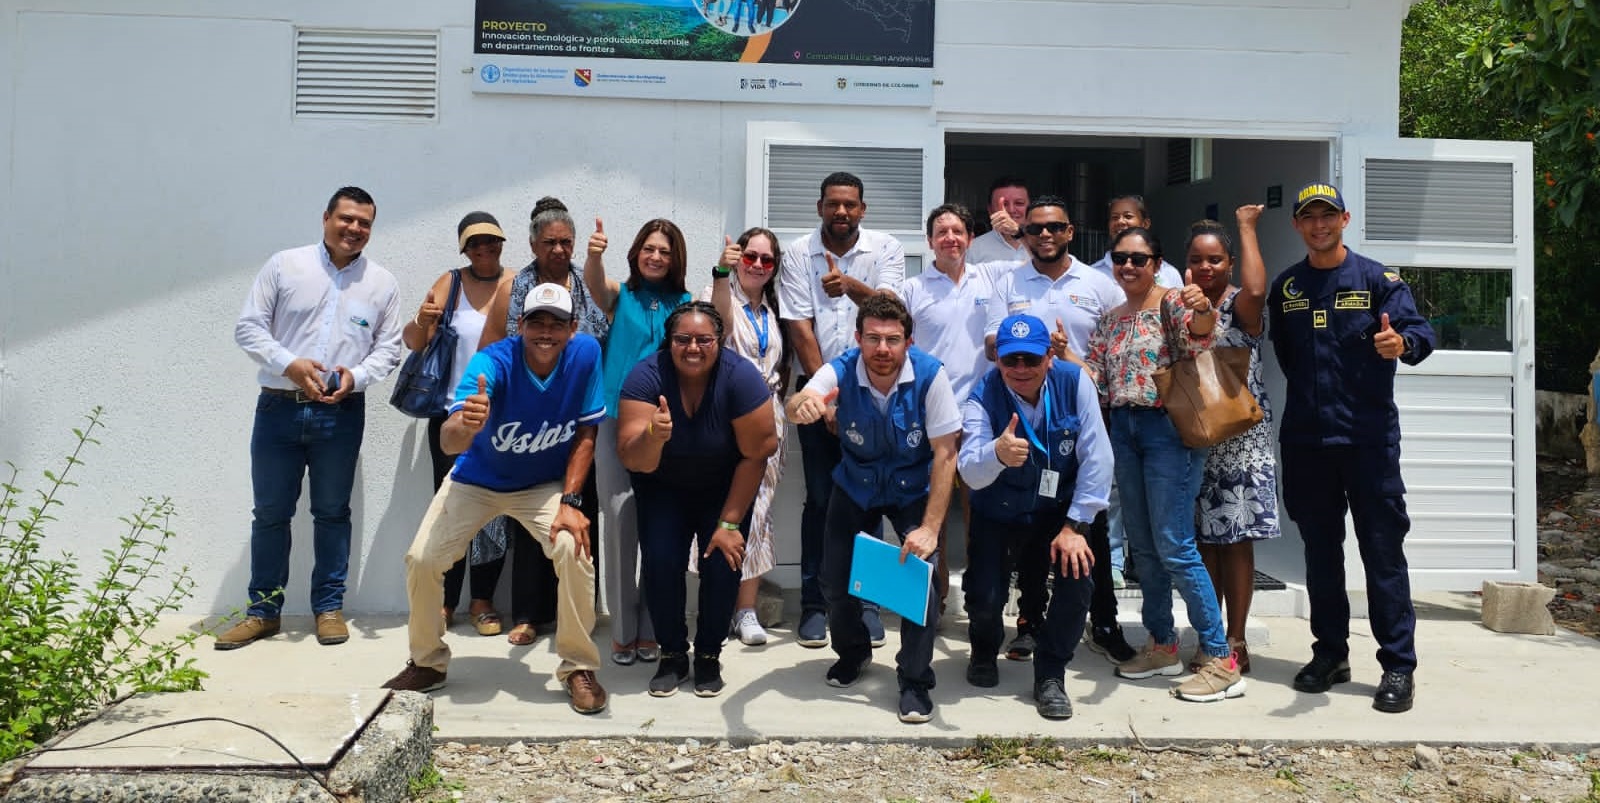 Cancillería inauguró planta de transformación de frutas y verduras en San Andrés Islas